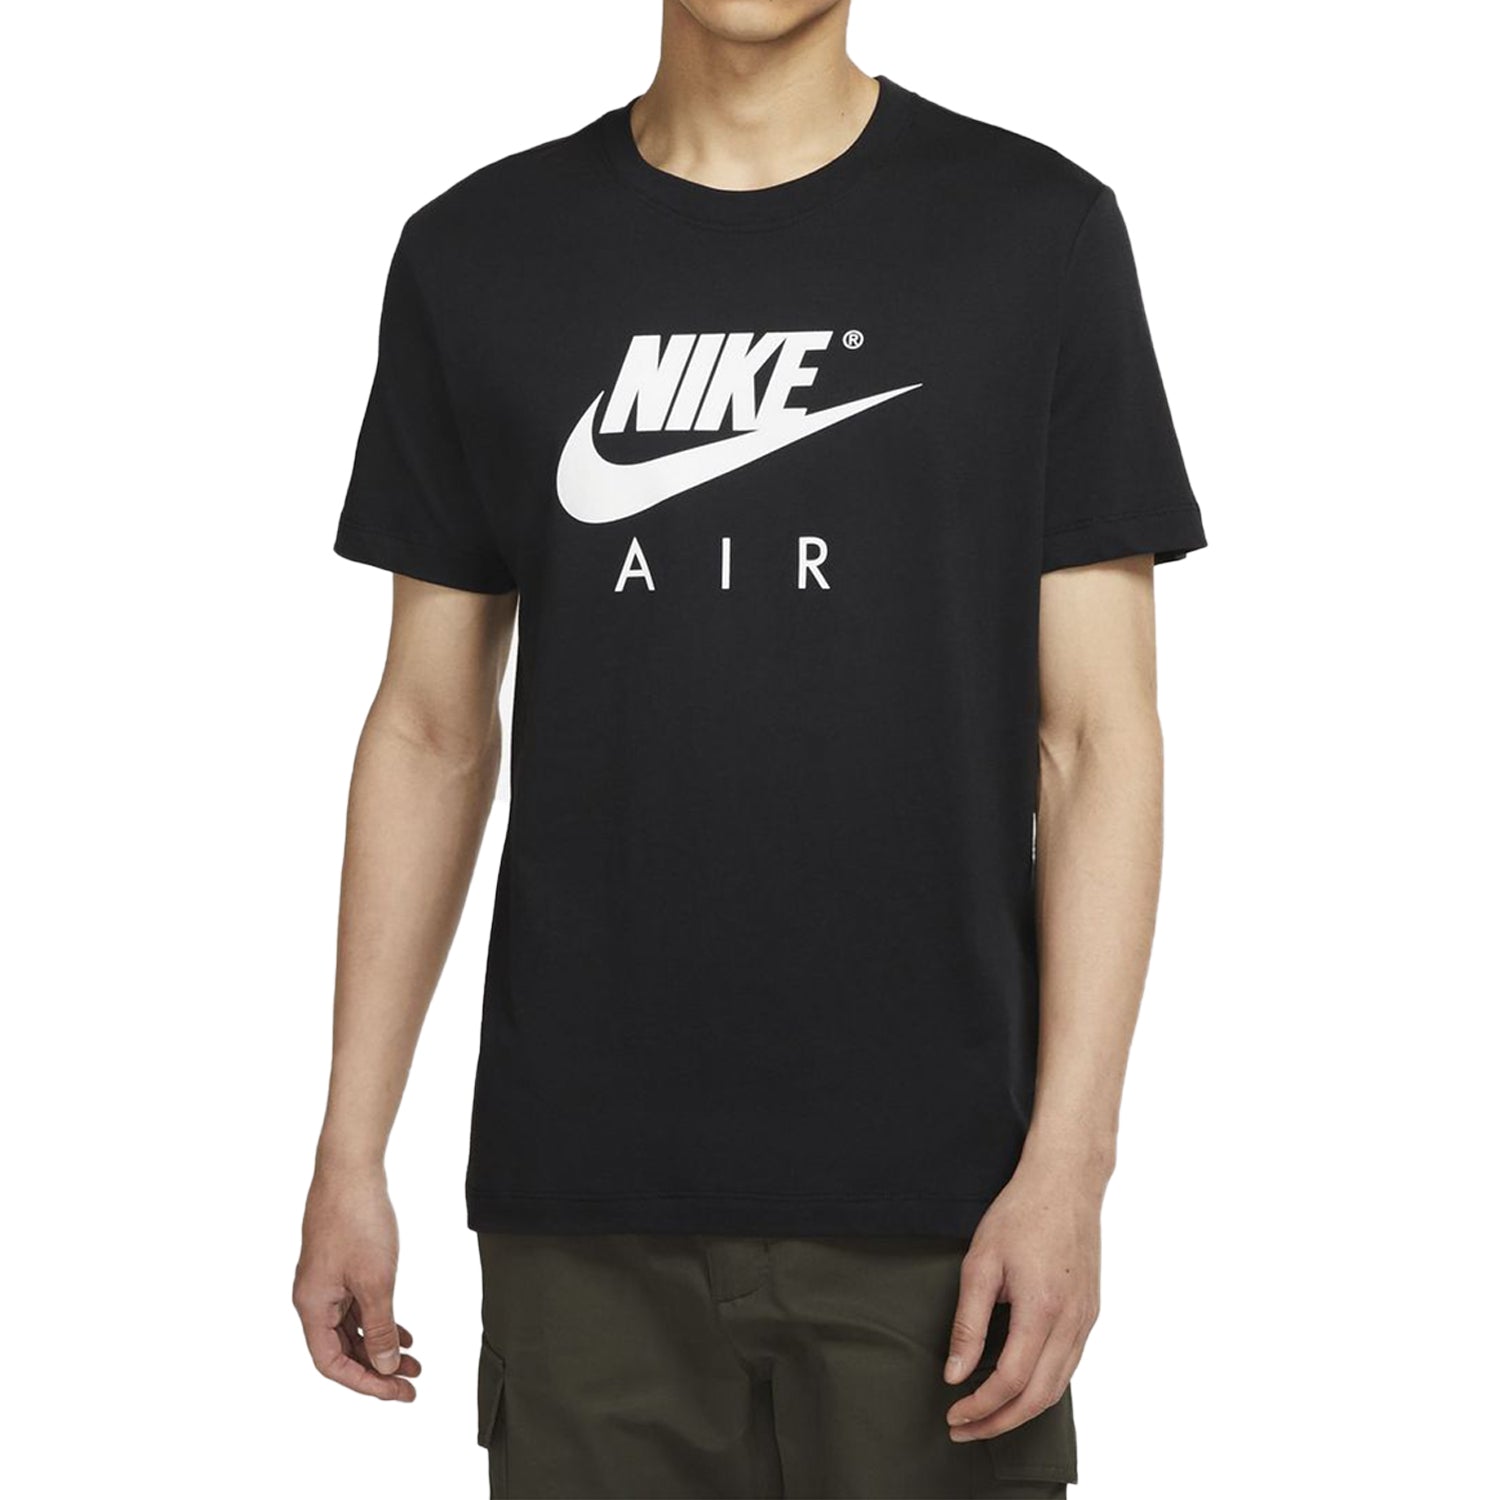 Nike Sportswear T-shir Mens Style : Dd3351